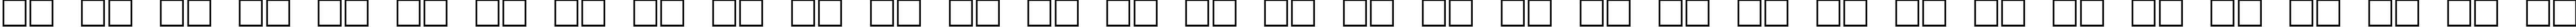 Пример написания русского алфавита шрифтом Pointage